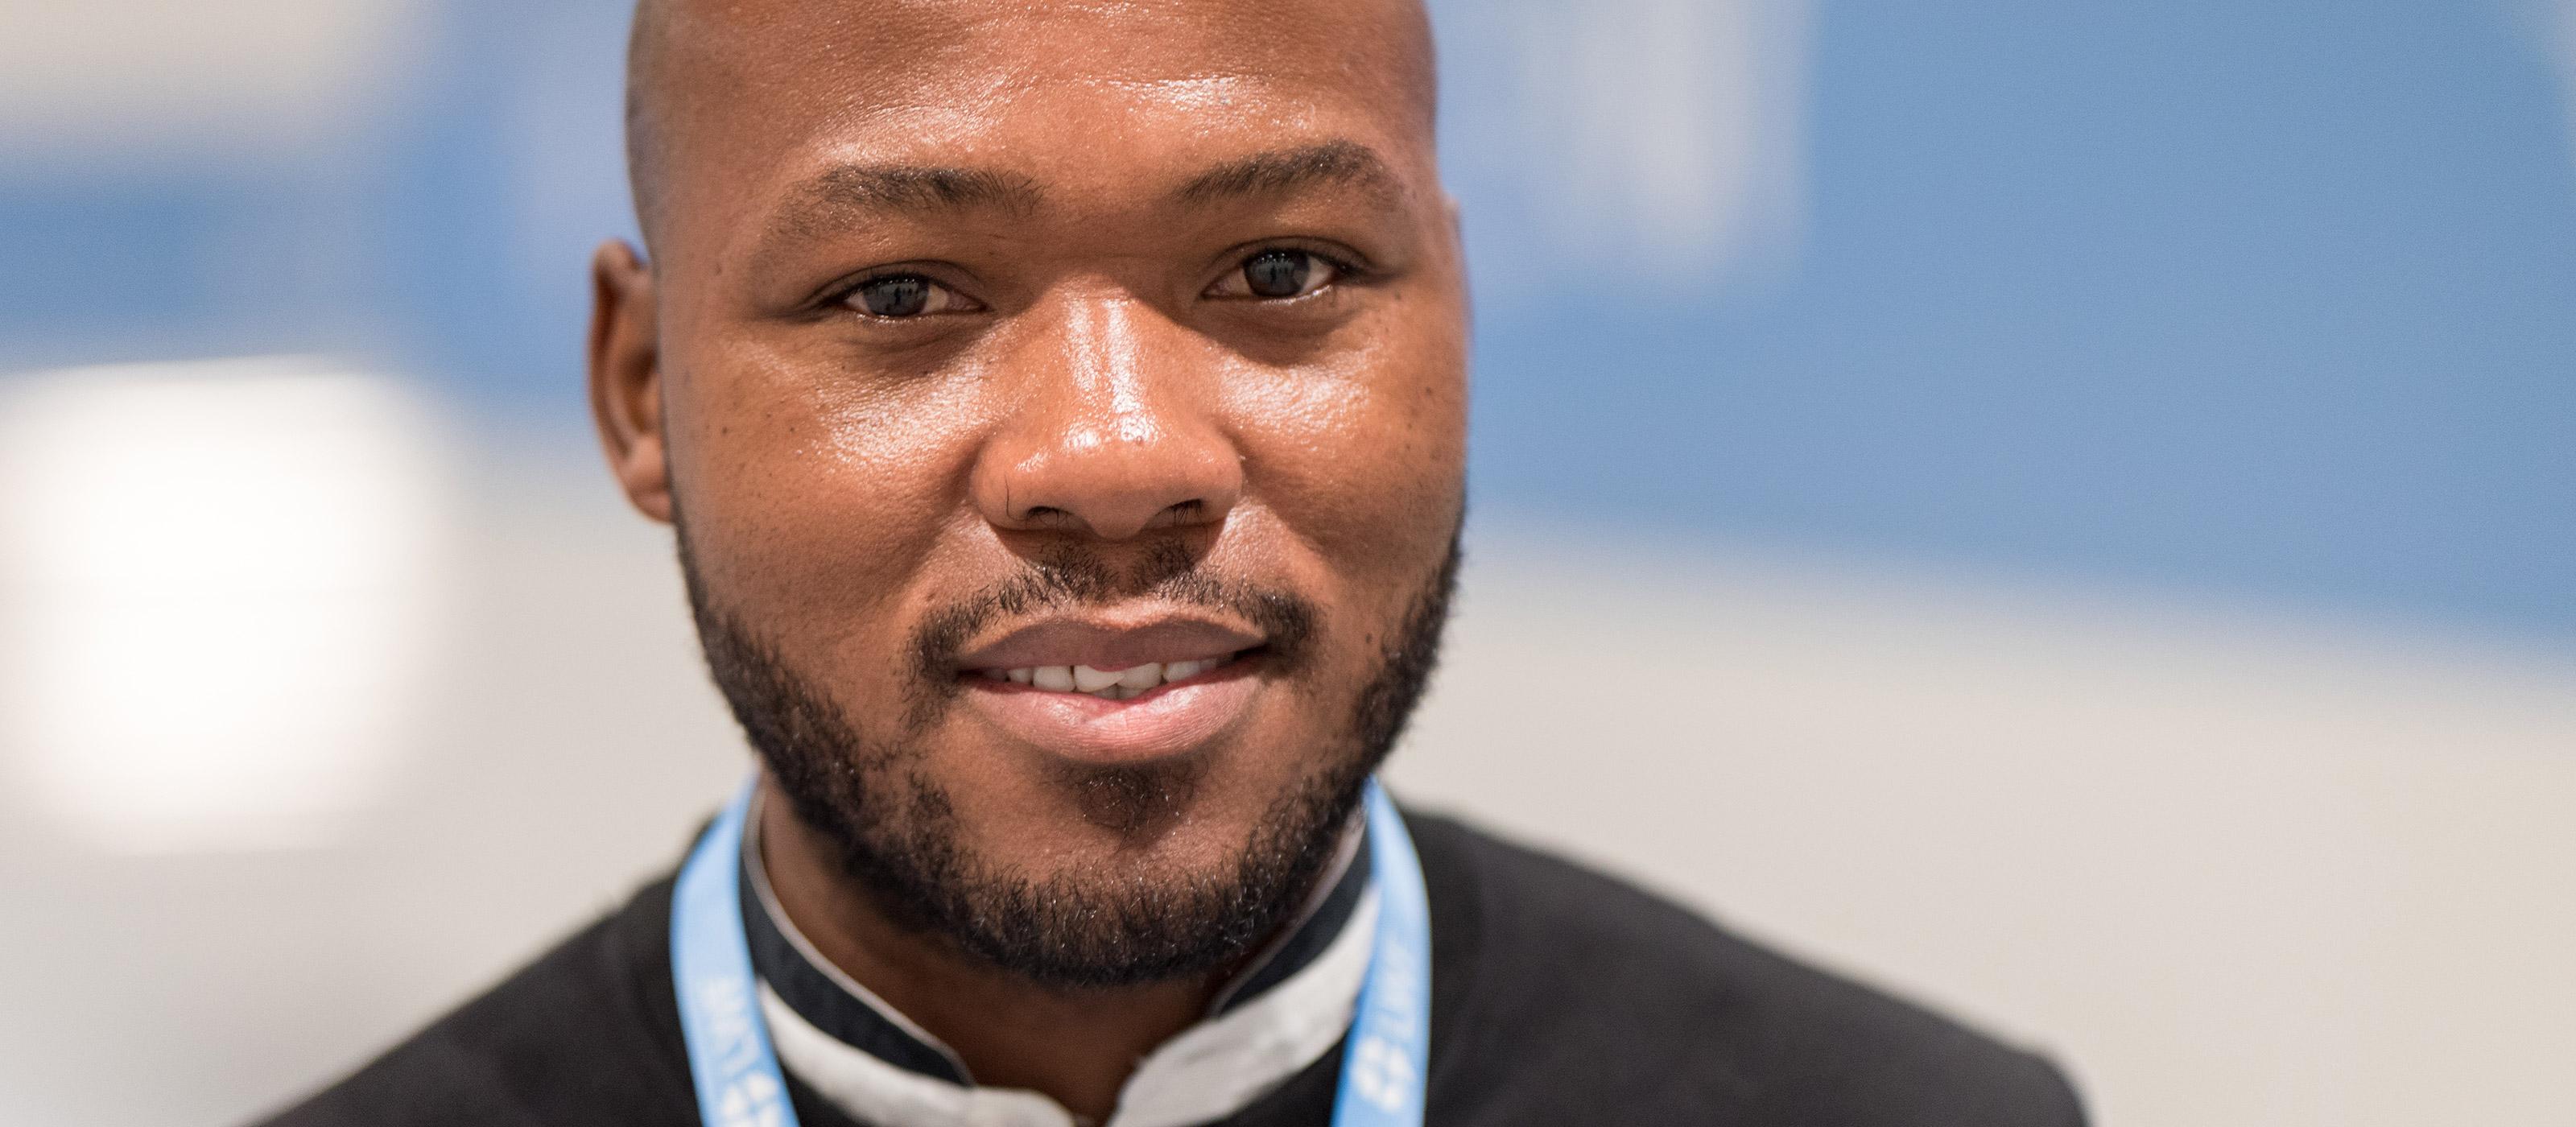 Khulekani Magwaza, LWB-Ratsmitglied und einer der Jugenddelegierten beim UN-Klimagipfel COP26. Foto: LWB/Albin Hillert